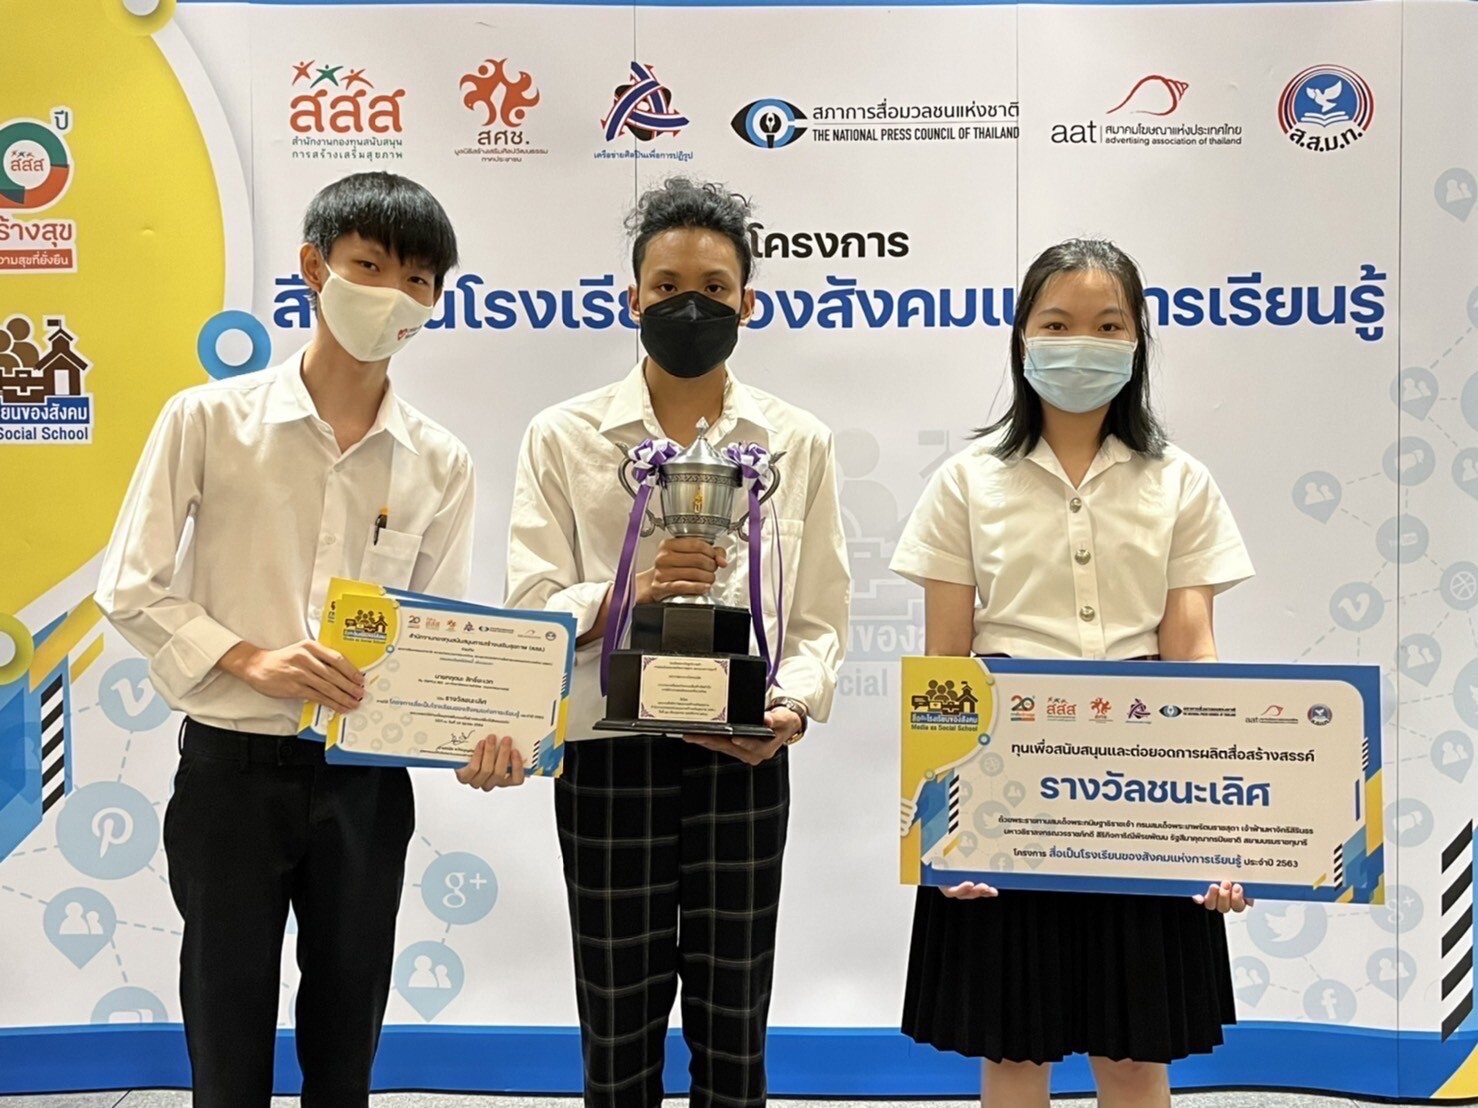 นักศึกษานิเทศฯ ม.หอการค้าไทย รับรางวัลควบชนะเลิศและรางวัลชมเชย